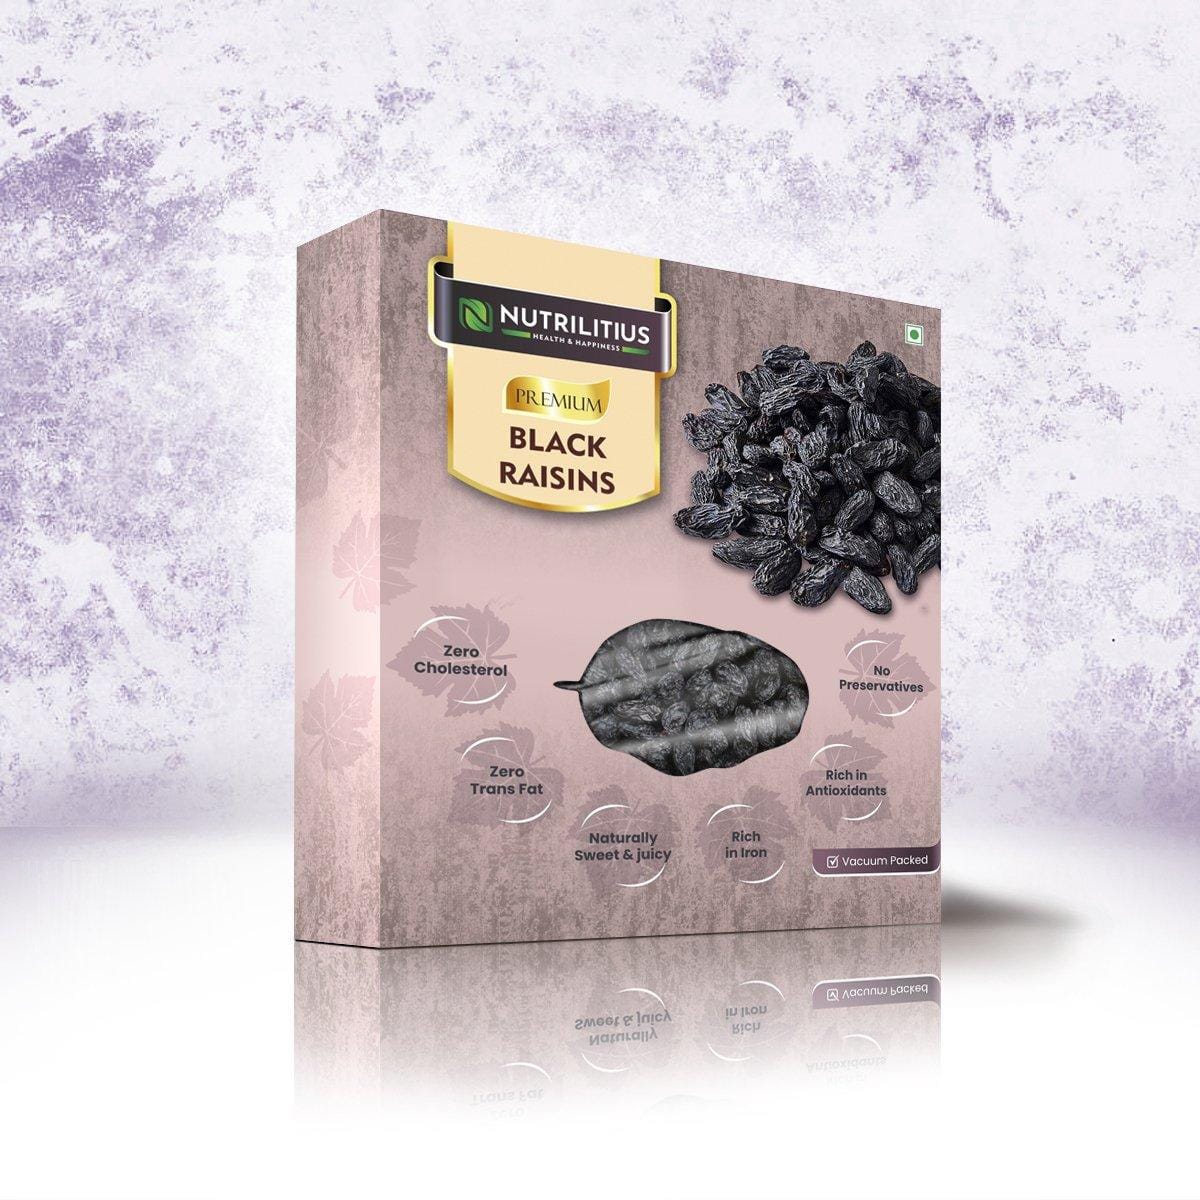 Nutrilitius Indian Black Raisins (Buy 1 Get 1)